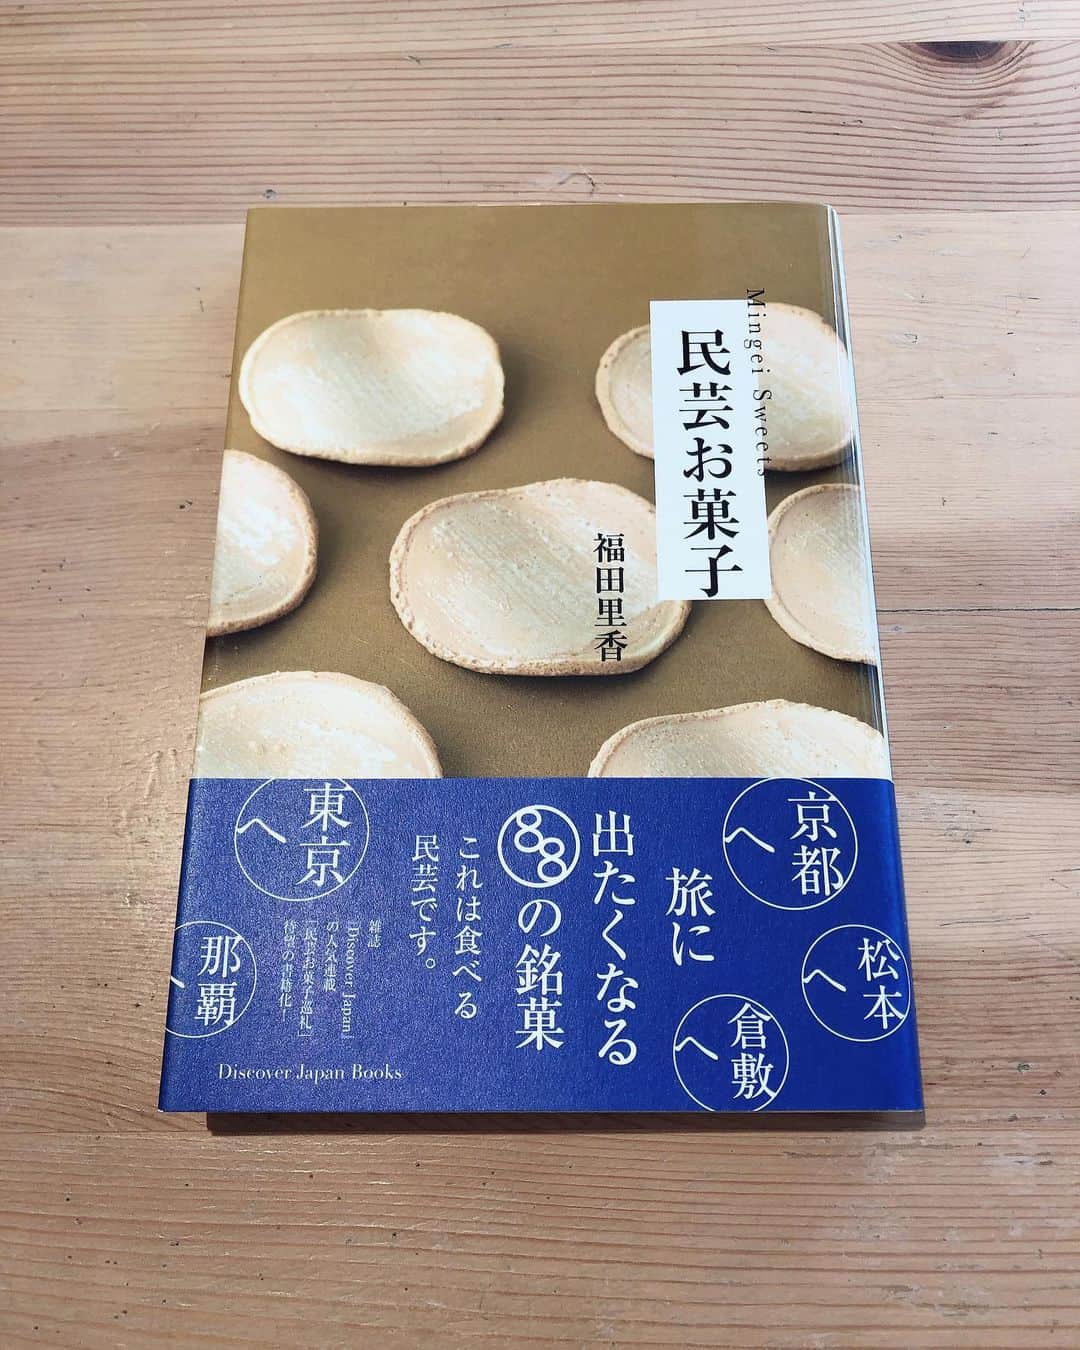 職人.comのインスタグラム：「「民芸お菓子」は、1926年から始まった民藝運動に関わった人たちがデザインを手がけたり、プロデュースしたお菓子を紹介した本です。  この本は仙台駄菓子や盛岡駄菓子が好きで随分前に購入し、次旅行へ行くときは郷土菓子を目当てに行ってみようと思っていました。  こんなに可愛く美味しそうなお菓子が日本にあったのね！とワクワクし、最近はもっぱら今度ここに行くときは・・・と妄想しながら付箋を貼り楽しんでいます。  郷土菓子は街並みやファッション、料理と比べても現存率がかなり高いと聞いて驚きです。  お取り寄せもできるお店が多いので、おうち時間のおともにその土地の味を楽しんでみてはいかがでしょうか？  民芸お菓子 https://amzn.to/3kgiuec  参考資料： https://www.ei-publishing.co.jp/magazines/detail/discover-japan-c-476861/ @shokunincom  #職人ドットコム #京都市 #キッチン用品 #調理道具 #料理道具 #台所道具 #手仕事 #暮らしの道具 #暮らしを楽しむ #工芸品 #民芸 #民藝 #器のある暮らし #焼き物 #奥野ビル #銀座 #奥野ビル銀座 #銀座奥野ビル #レトロビル #銀座アパート #銀座アパートメント #職人ドットコム銀座ショールーム #銀座1丁目 #銀座一丁目 #民芸お菓子 #枻出版社 #エイ出版社 #郷土菓子 #仙台駄菓子 #盛岡駄菓子」